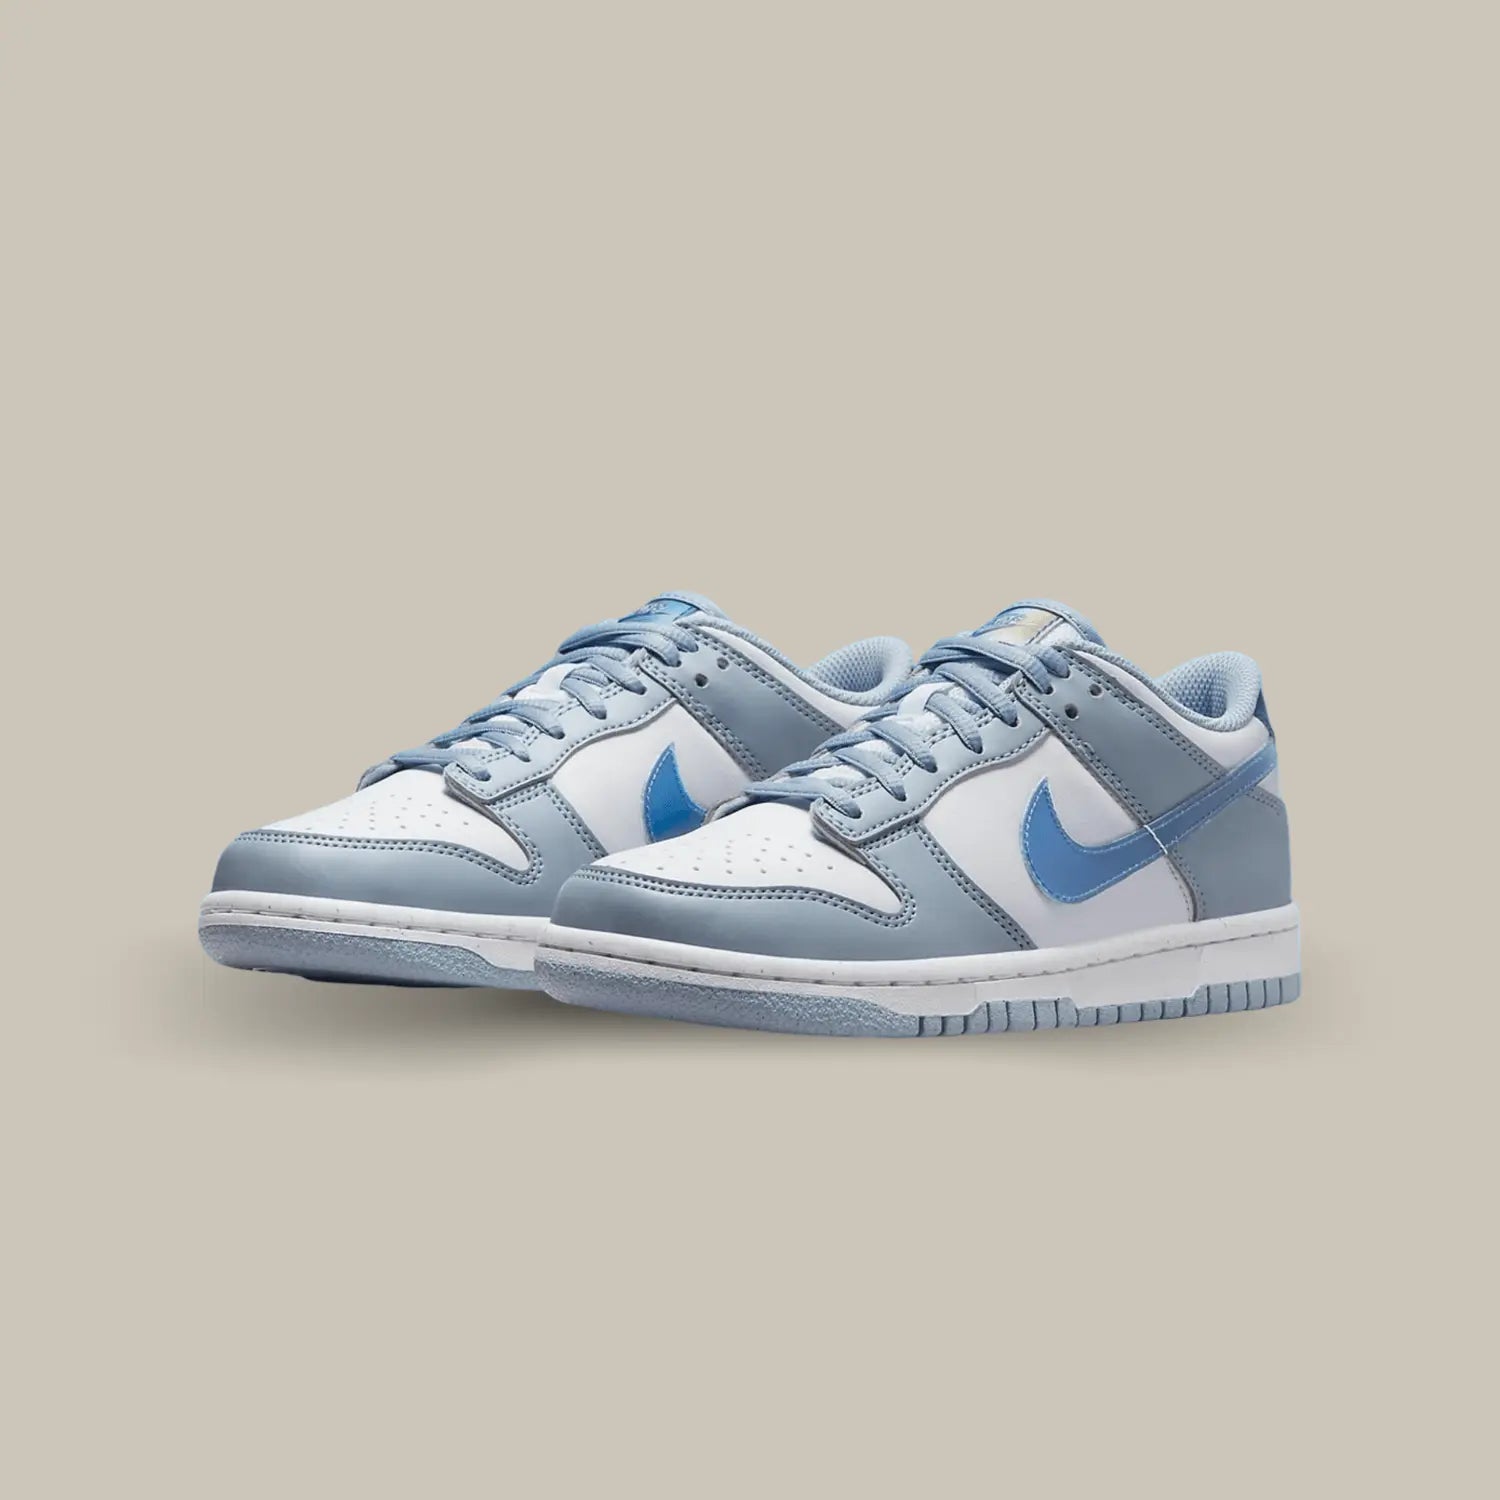 Cette Nike Dunk Low Hologram présente une base en cuir synthétique blanc, accompagnée de superpositions en cuir synthétique bleu clair.